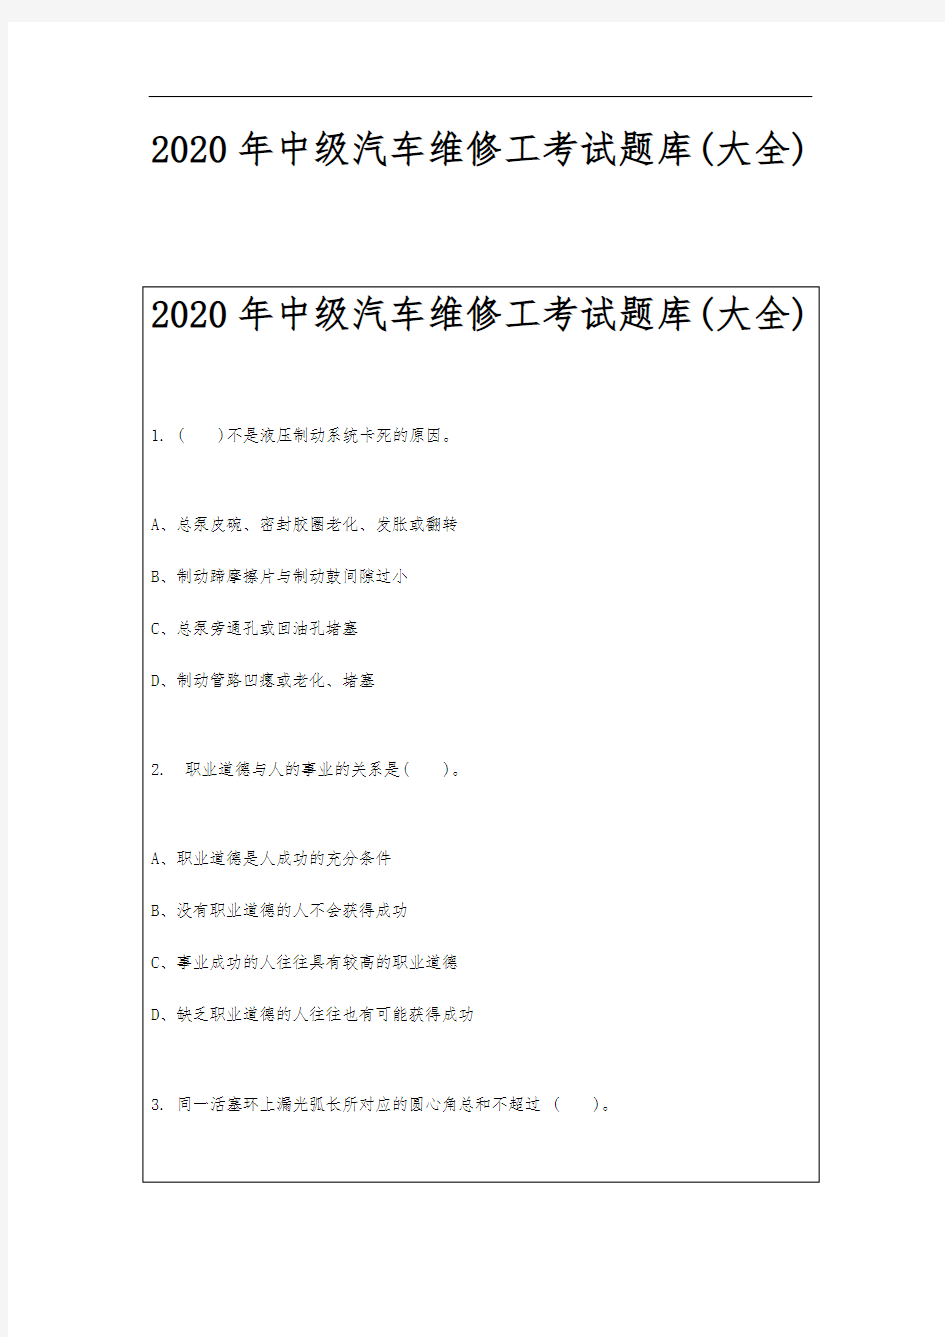 2020年中级汽车维修工考试题库(大全)